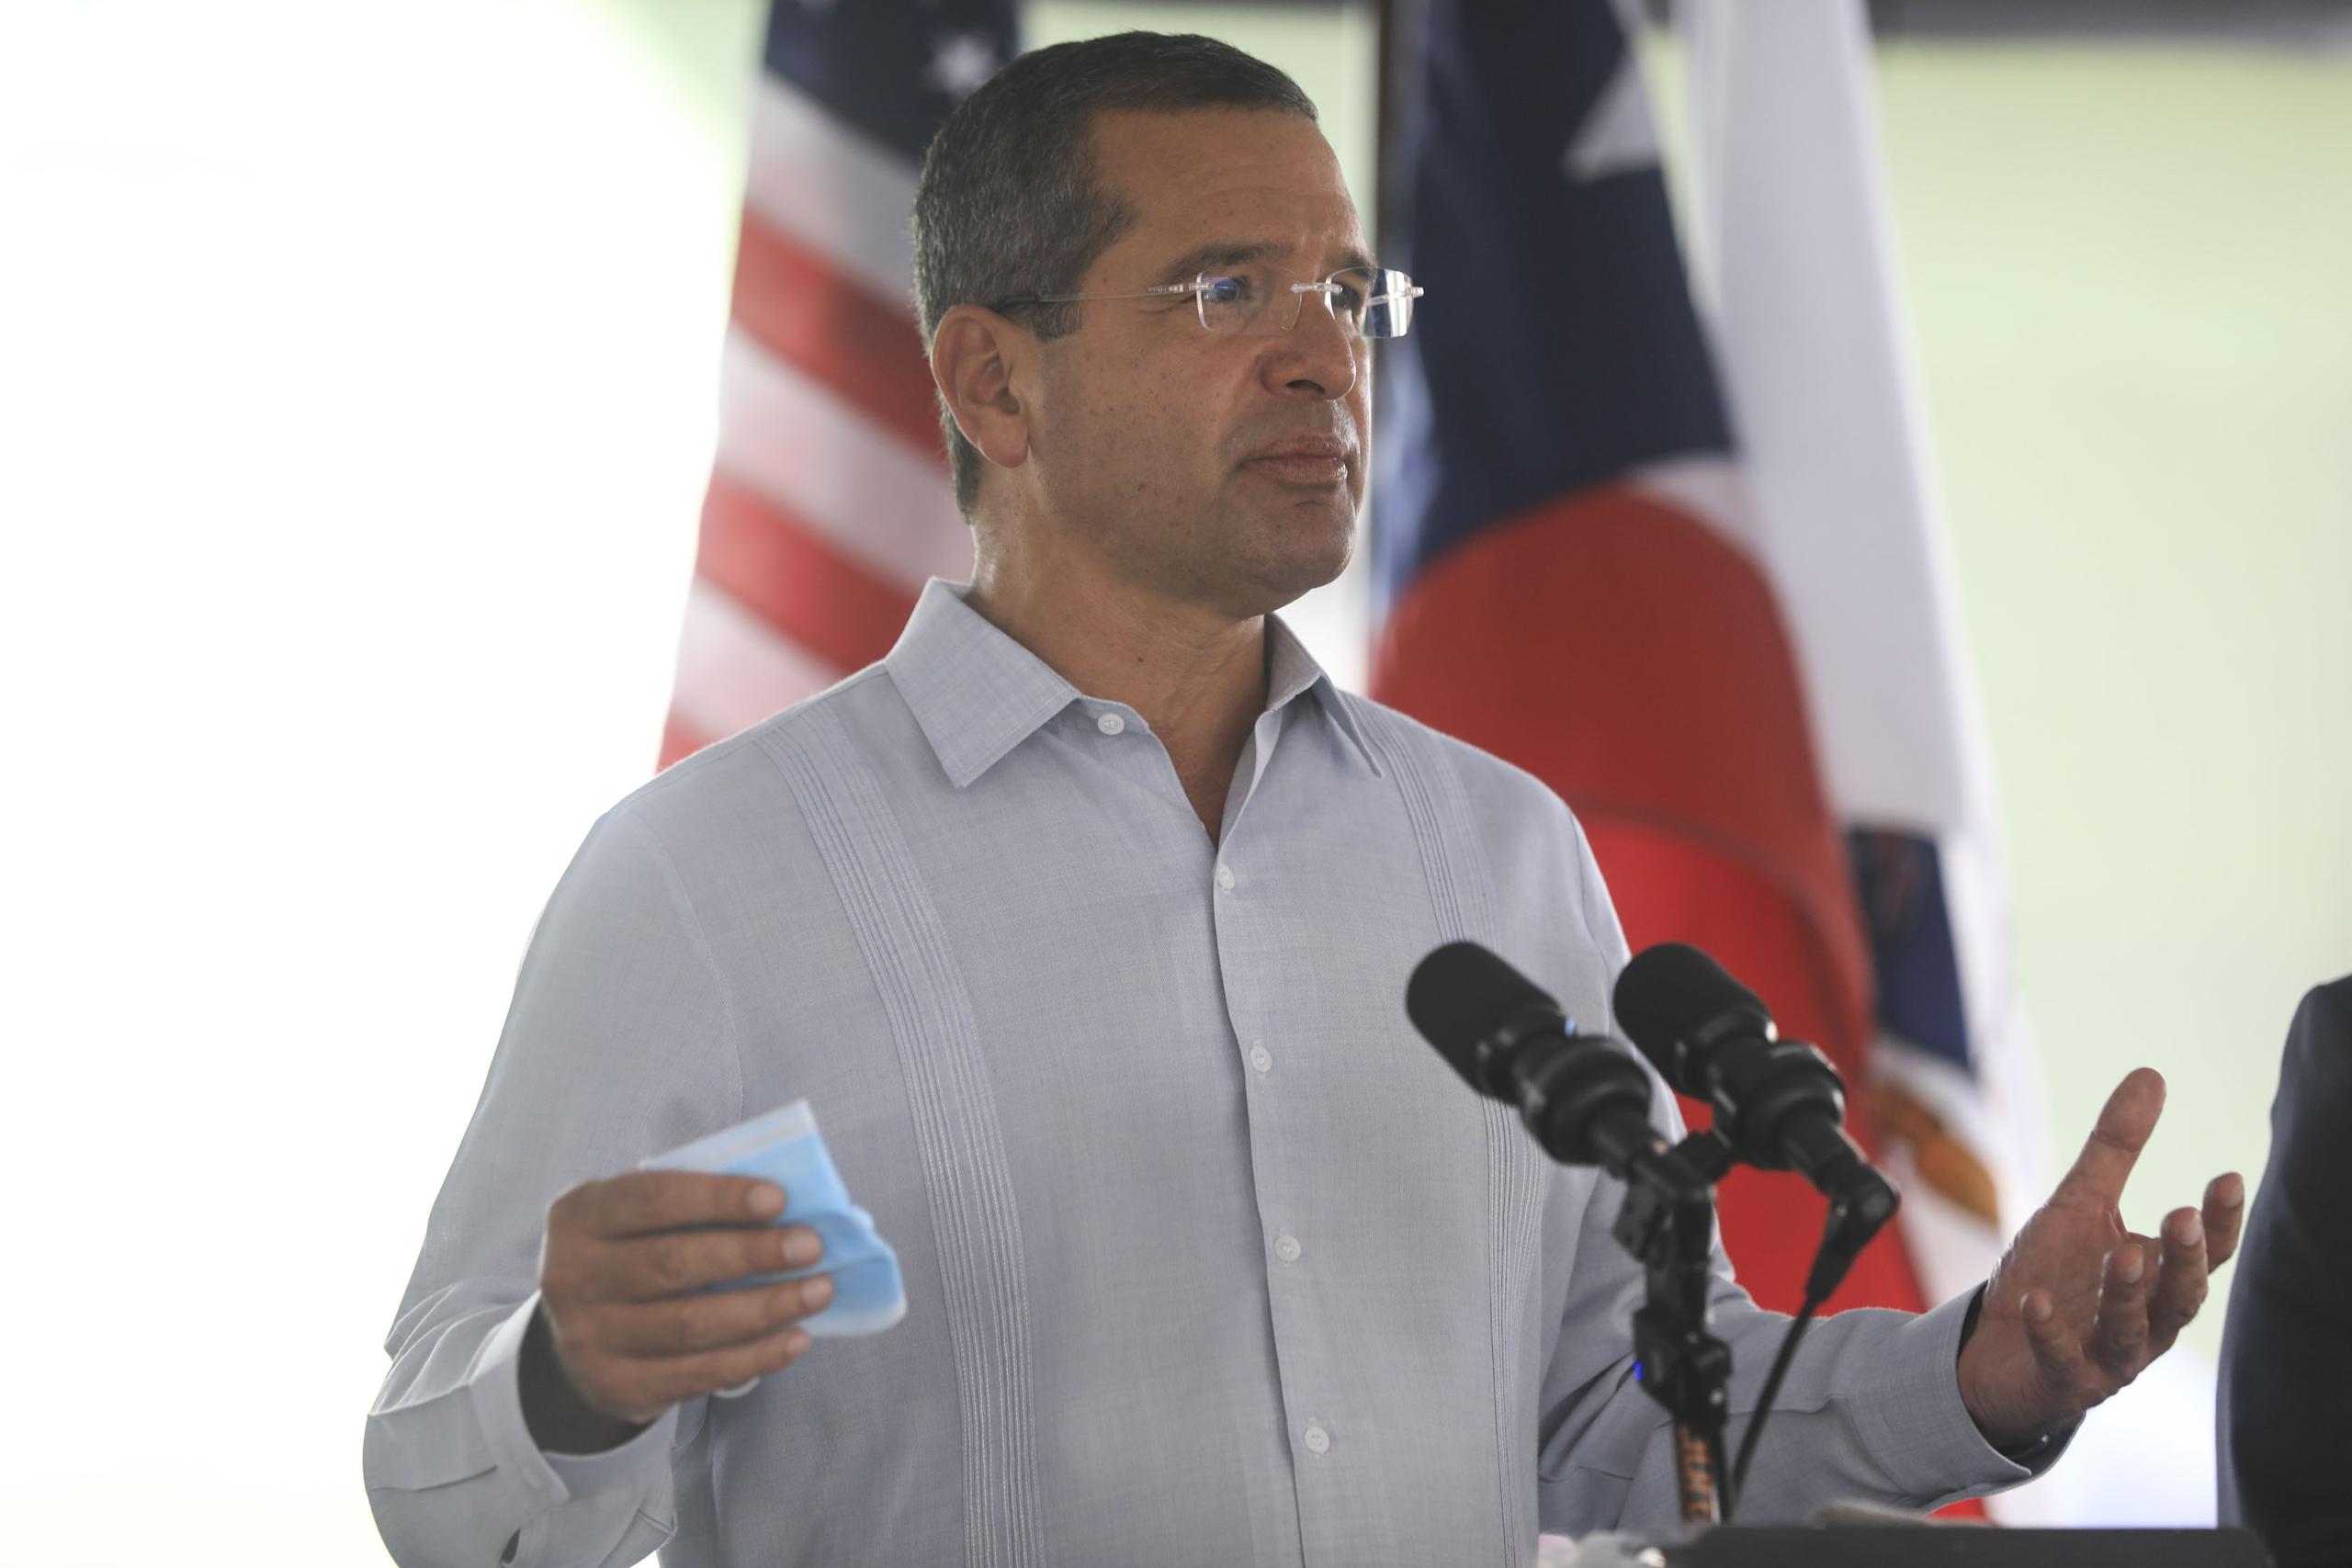 El gobernador de Puerto Rico, Pedro Pierluisi, convirtió en ley un proyecto que asigna $13 millones anuales a diversas entidades deportivas del país, incluyendo al Comité Olímpico y al Albergue Olímpico.